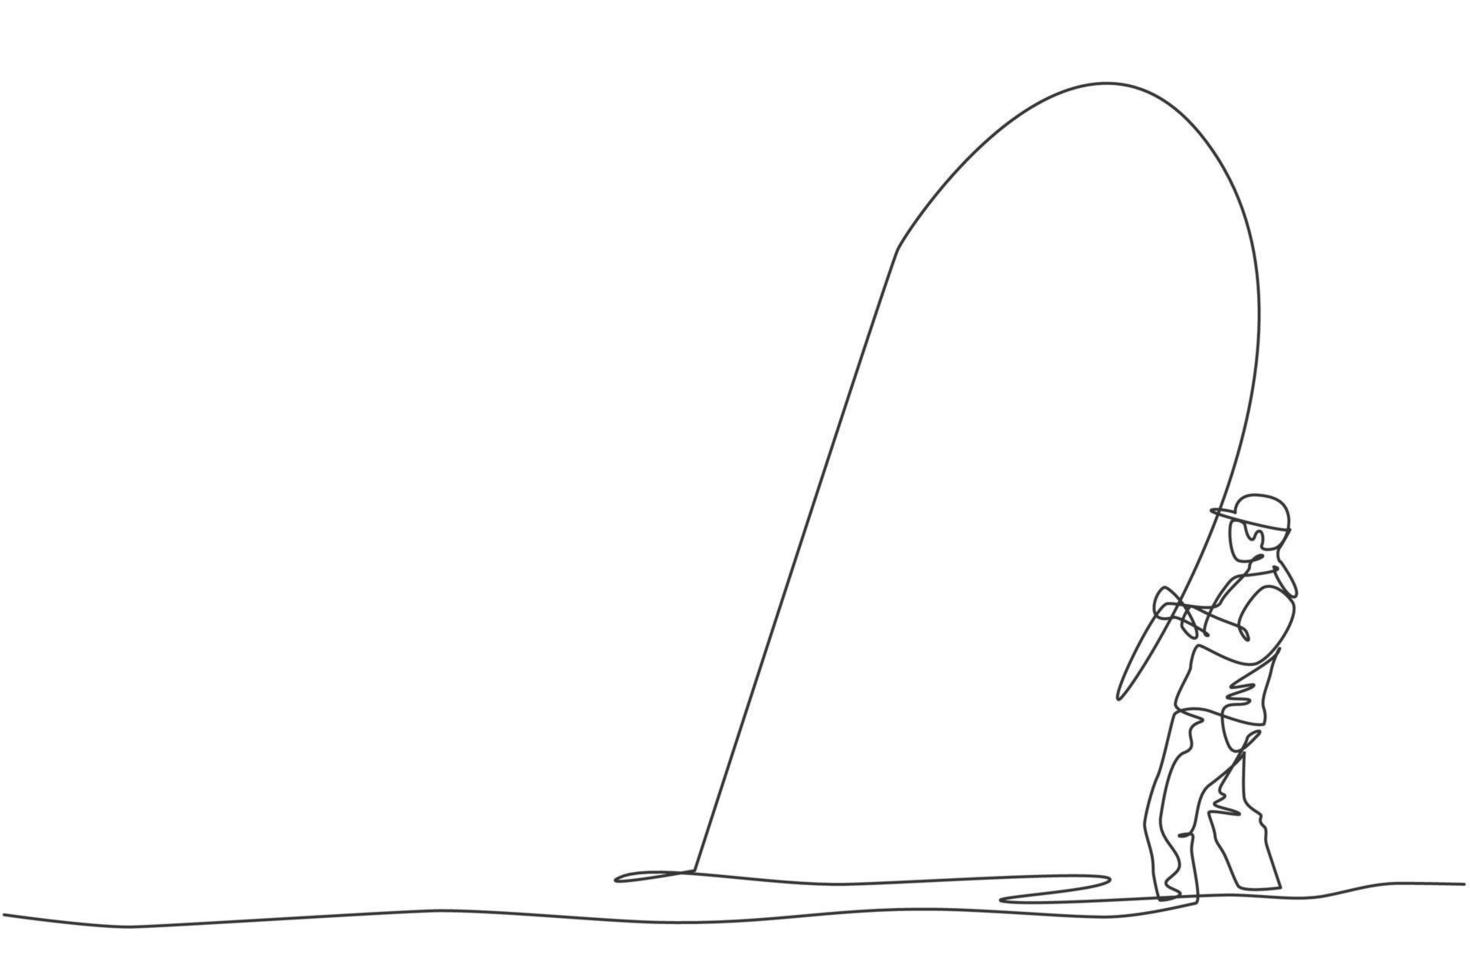 dibujo de una sola línea continua de un joven pescador feliz que pesca con mosca truchas en un río de aguas abiertas. concepto de vacaciones de hobby de pesca. ilustración gráfica de vector de diseño de dibujo de una línea de moda